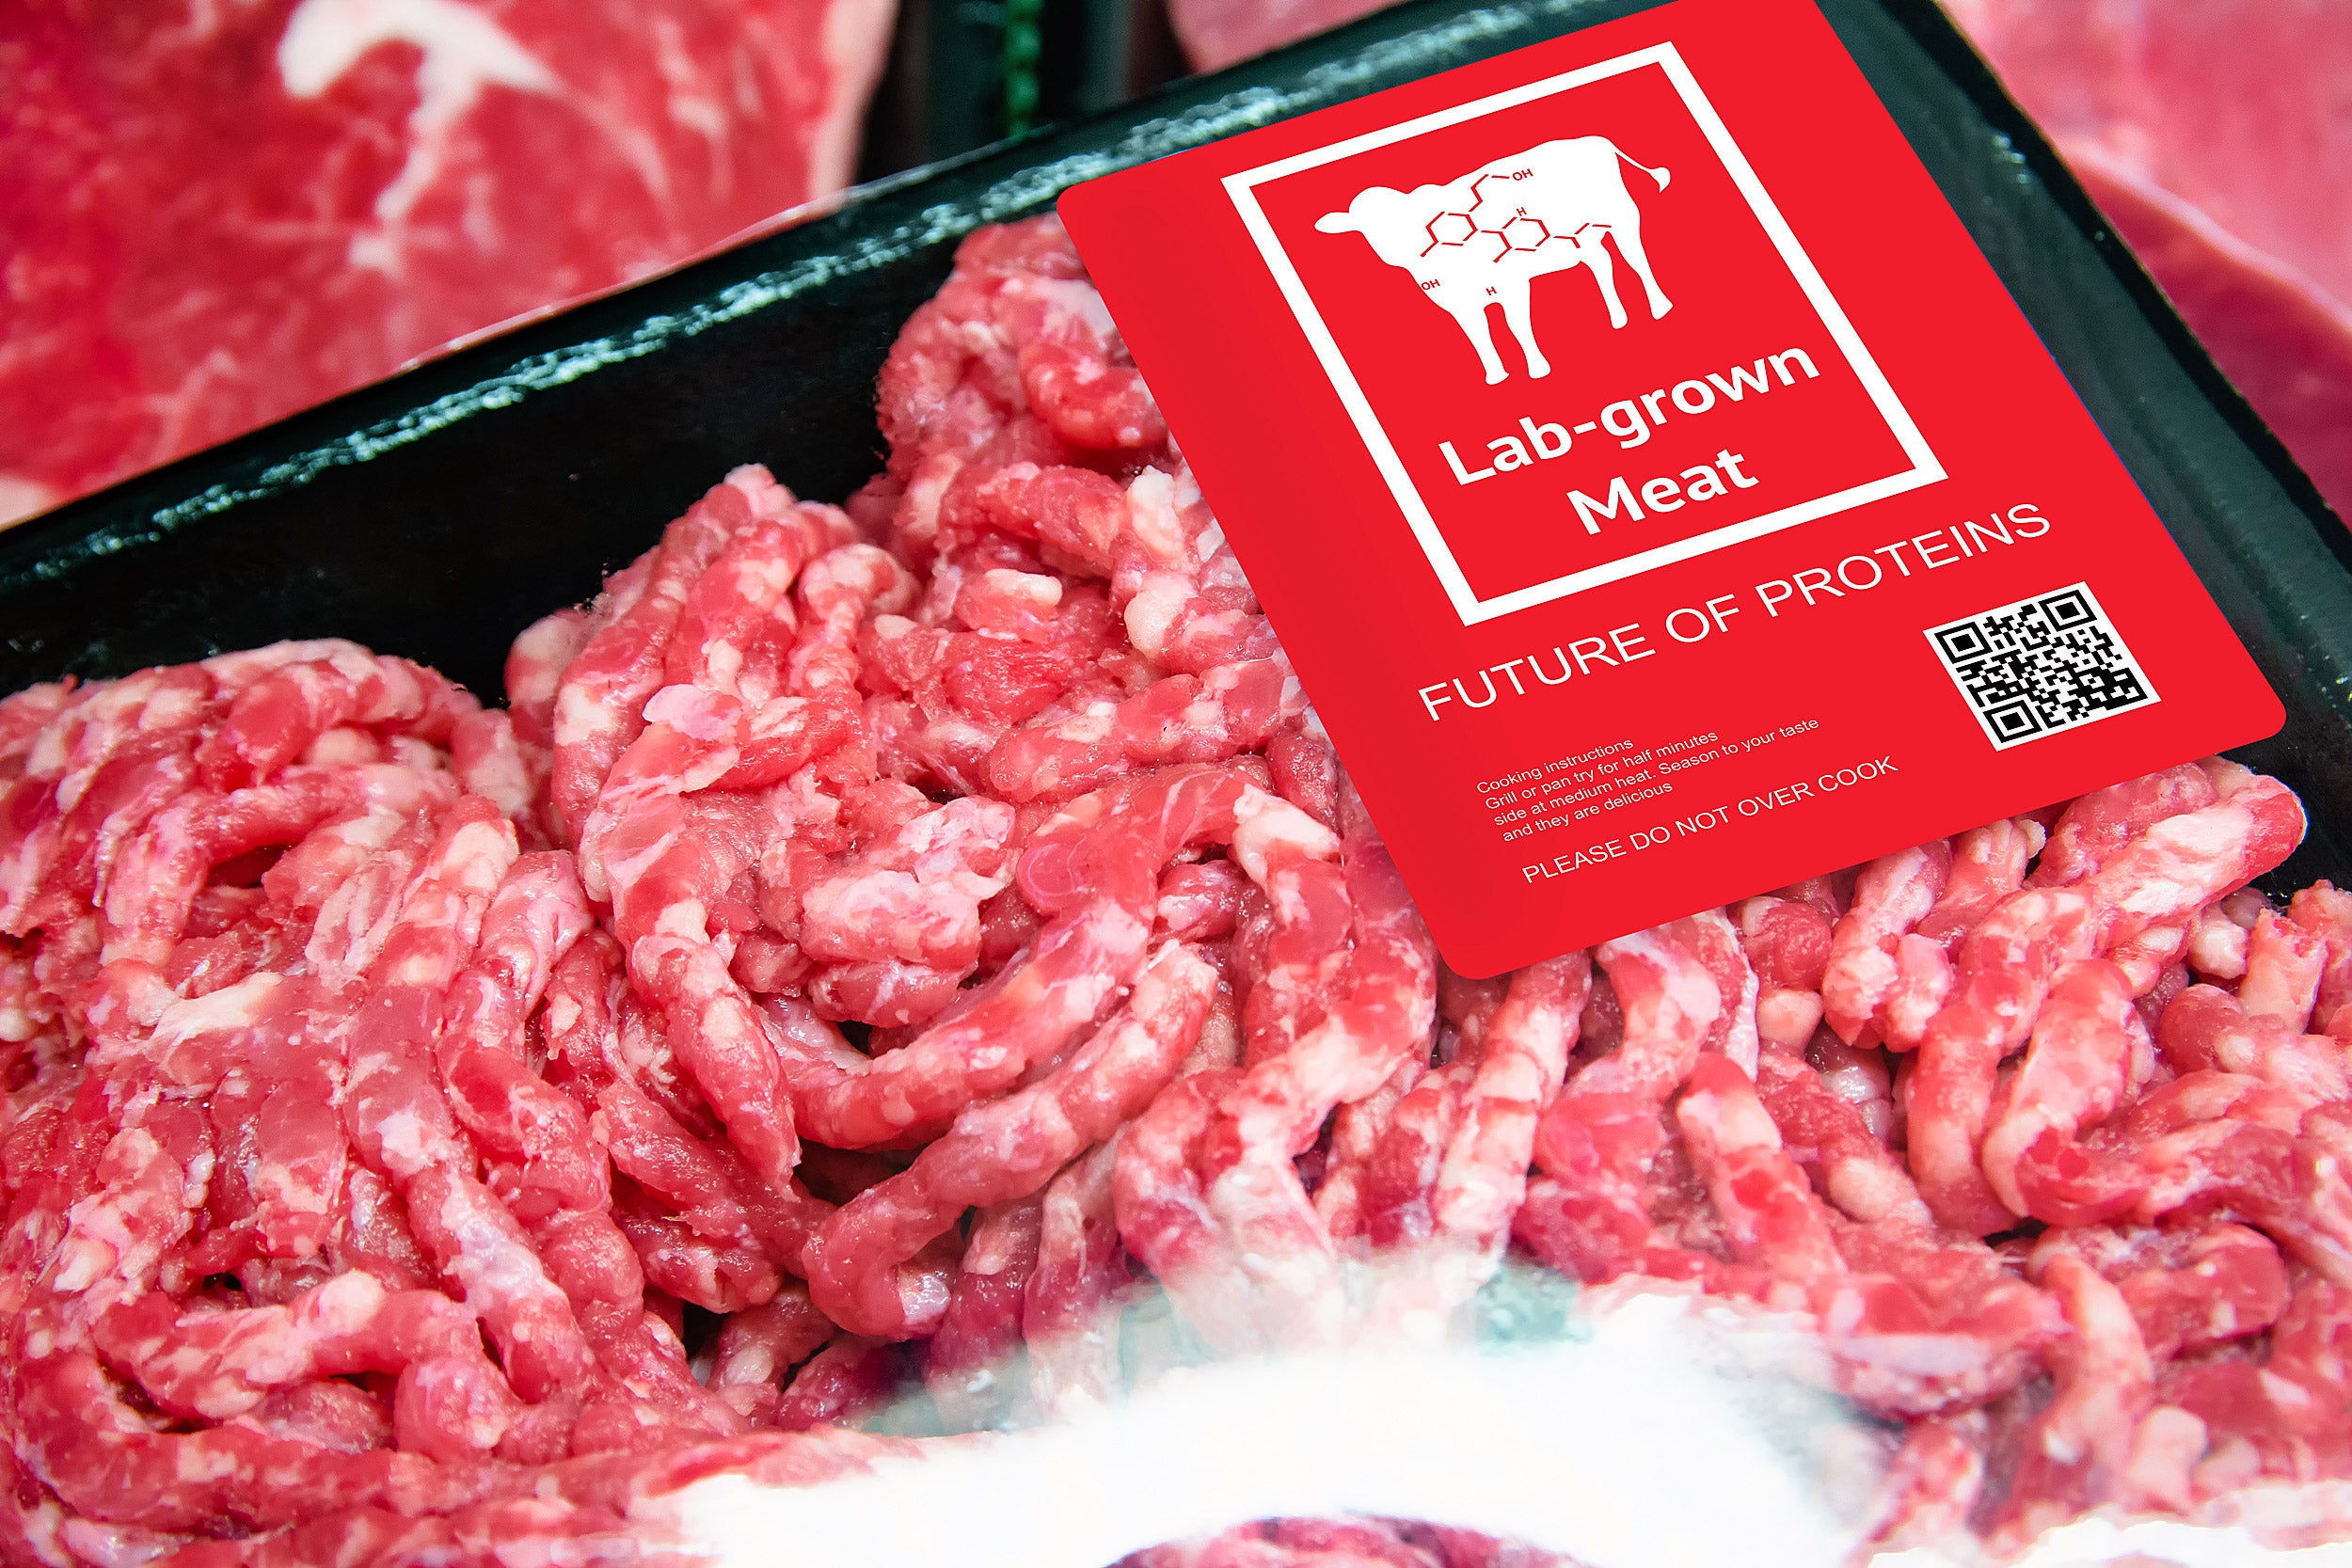 Package of lab-grown meat.